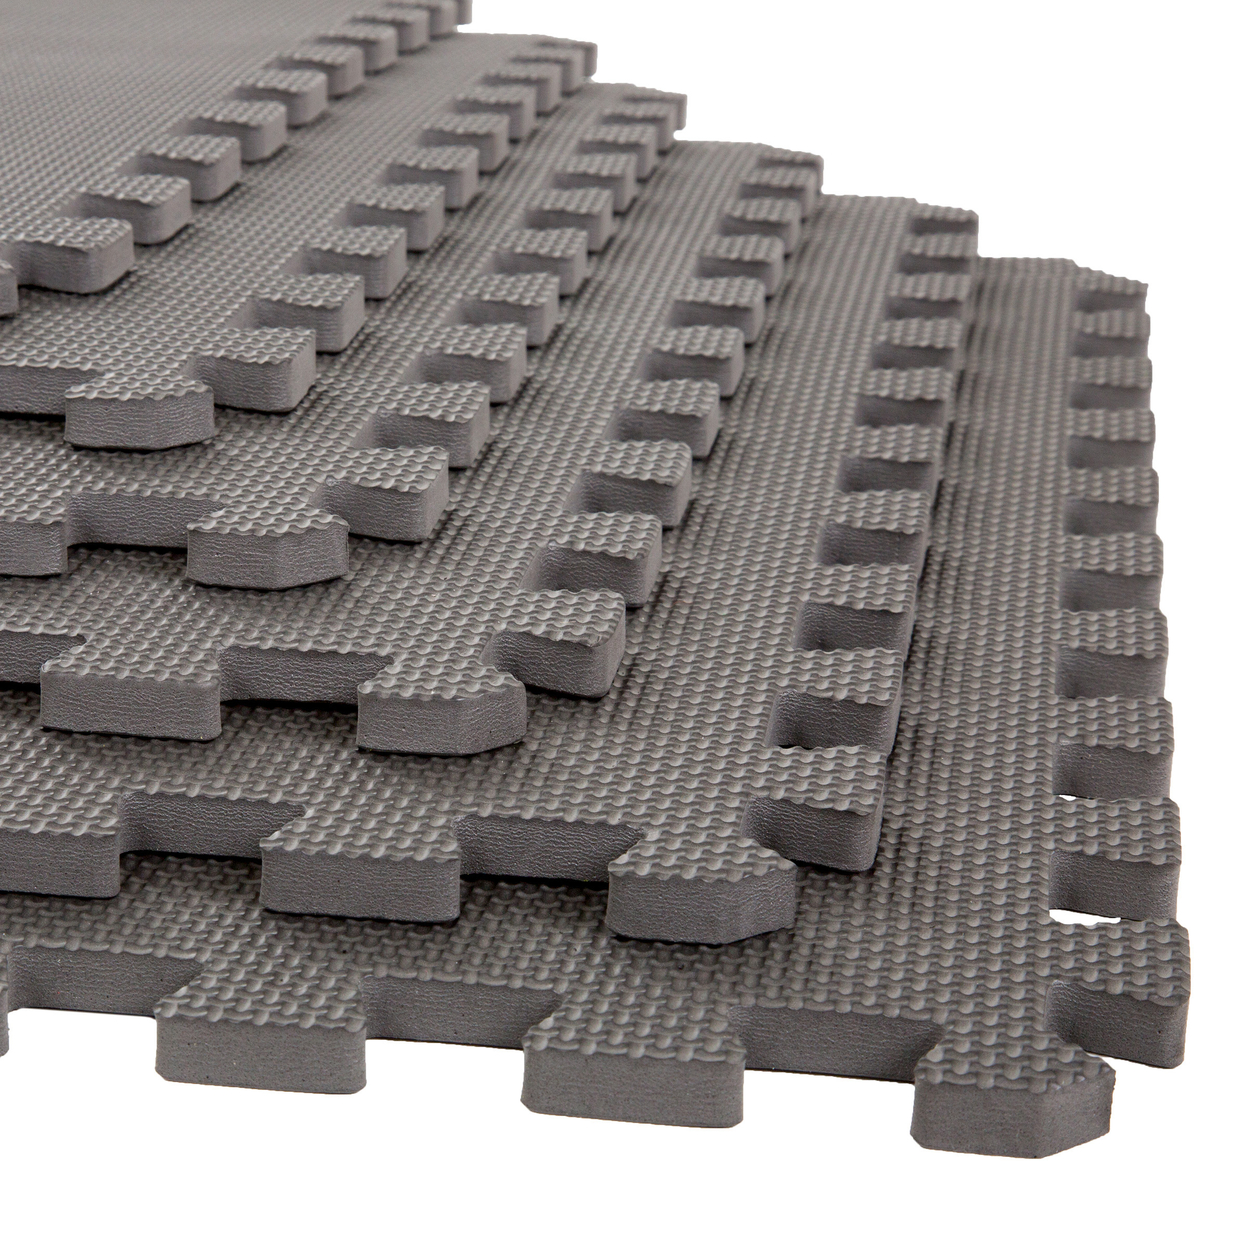 Stalwart Exercise Foam Flooring - 6 Pc - 2' X 2' Tiles 24 Square Feet Yoga Gray